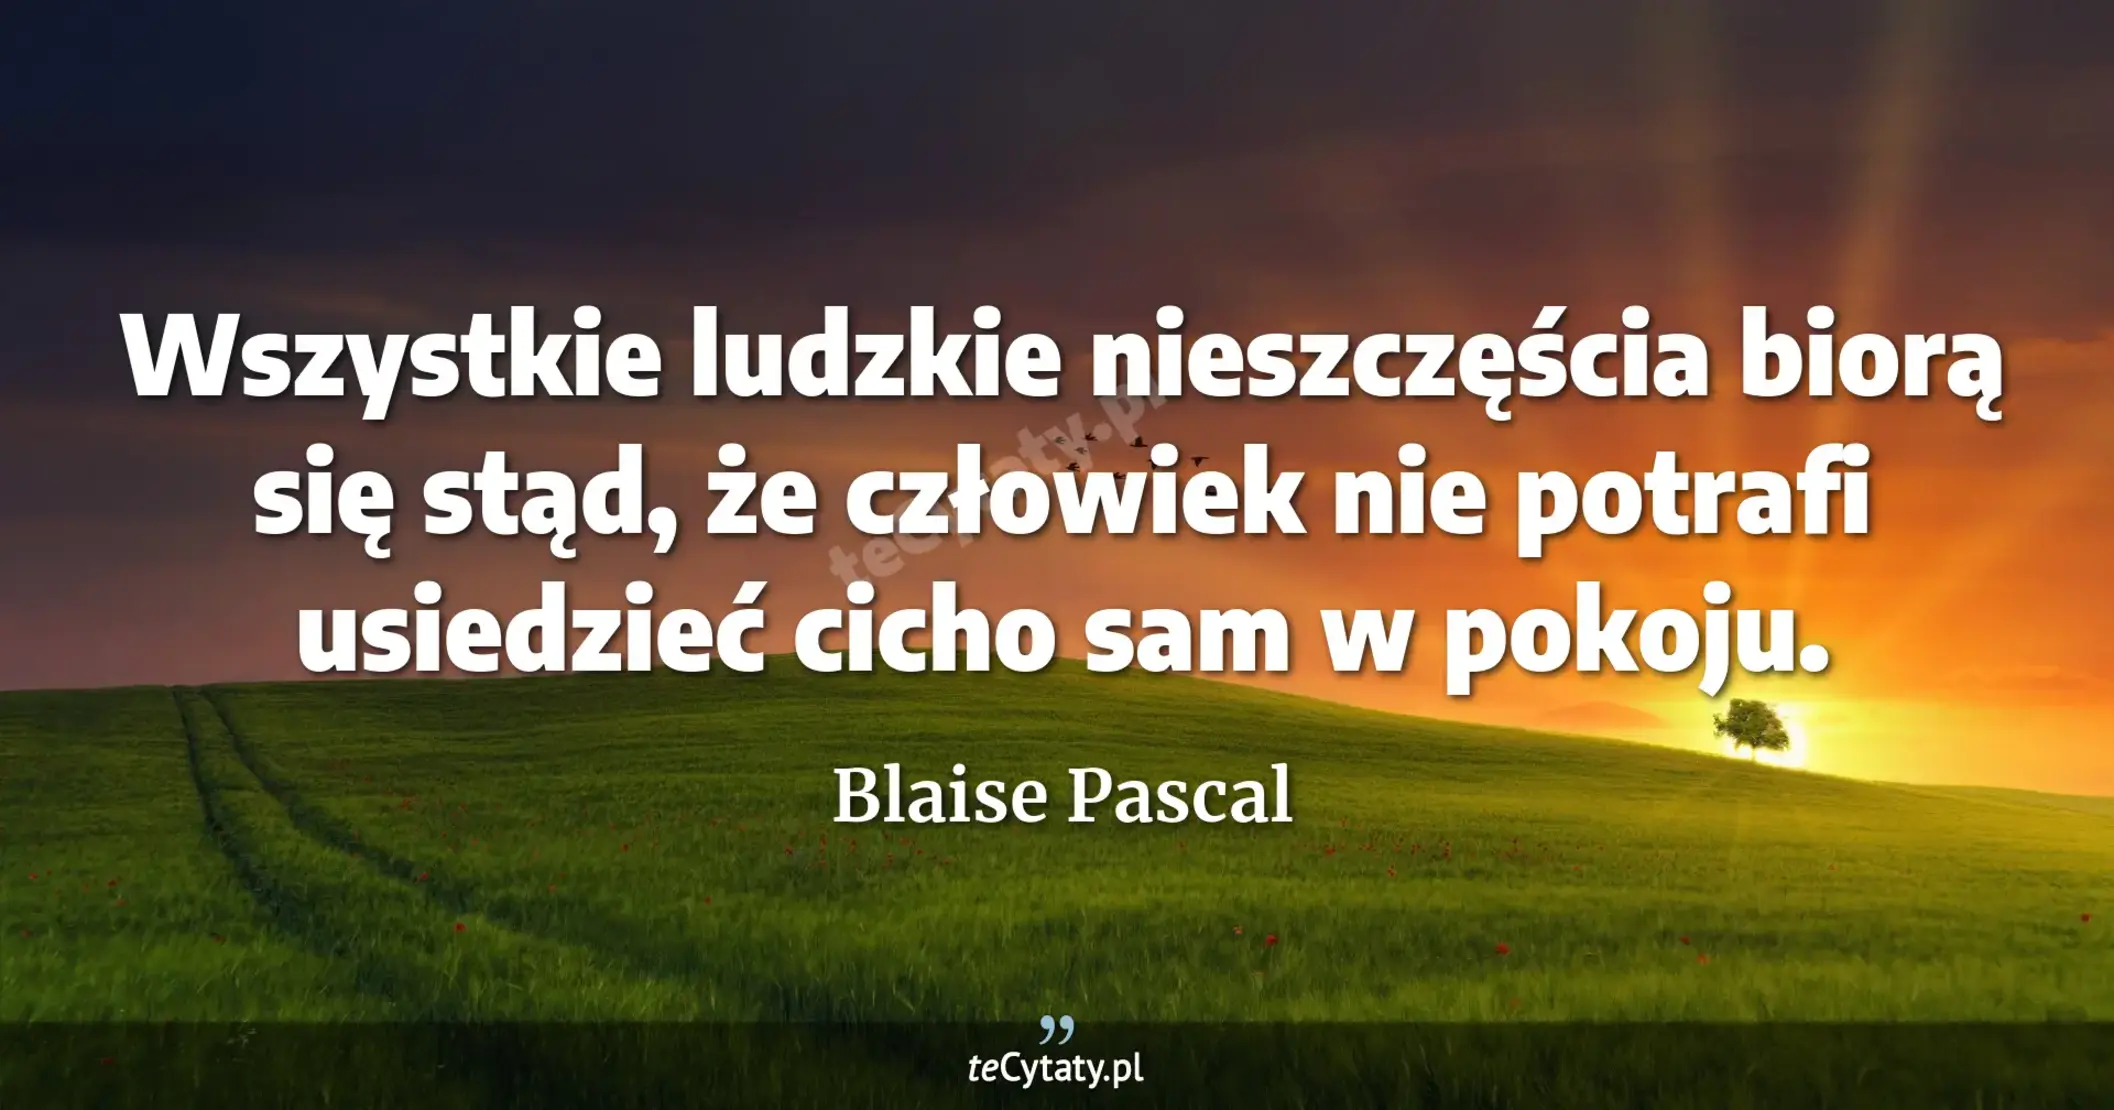 Wszystkie ludzkie nieszczęścia biorą się stąd, że człowiek nie potrafi usiedzieć cicho sam w pokoju. - Blaise Pascal